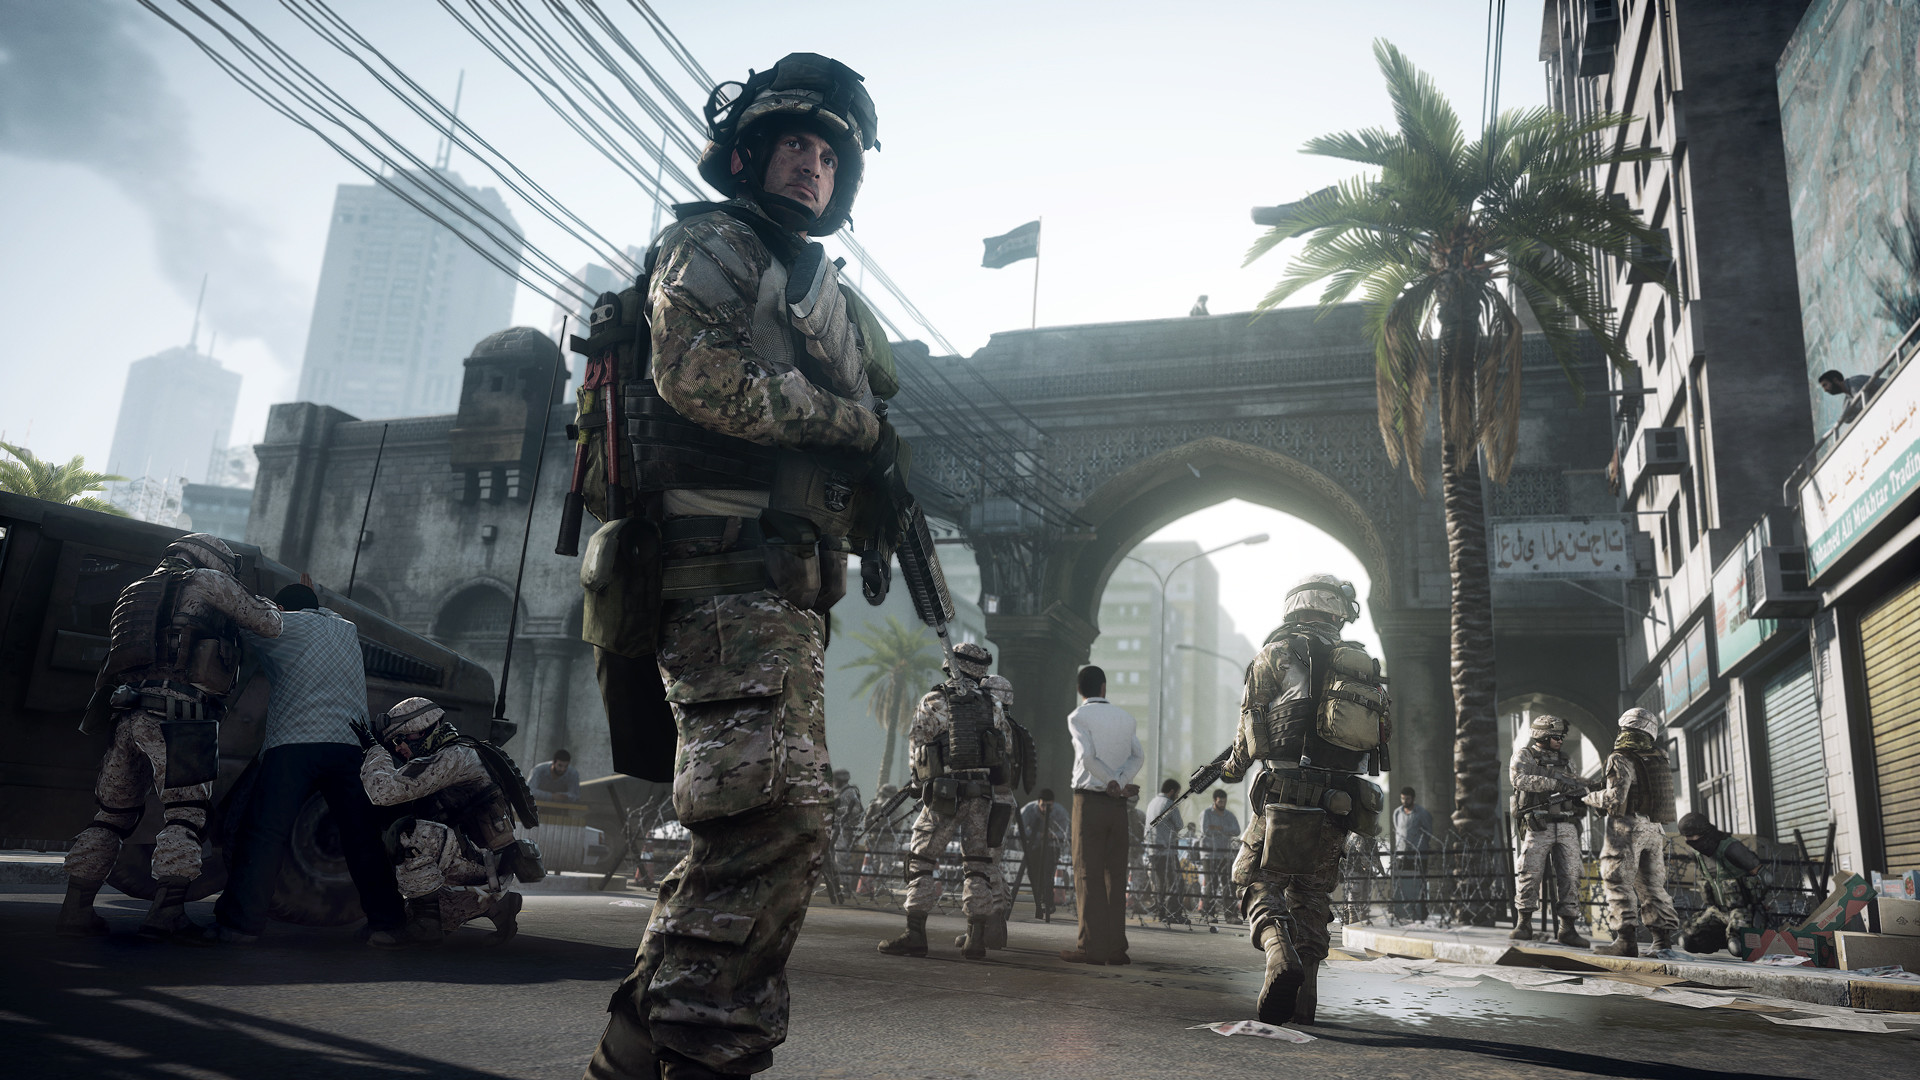 17 июля выходит реалистичный мод для Battlefield 3 – его разрабатывали семь лет